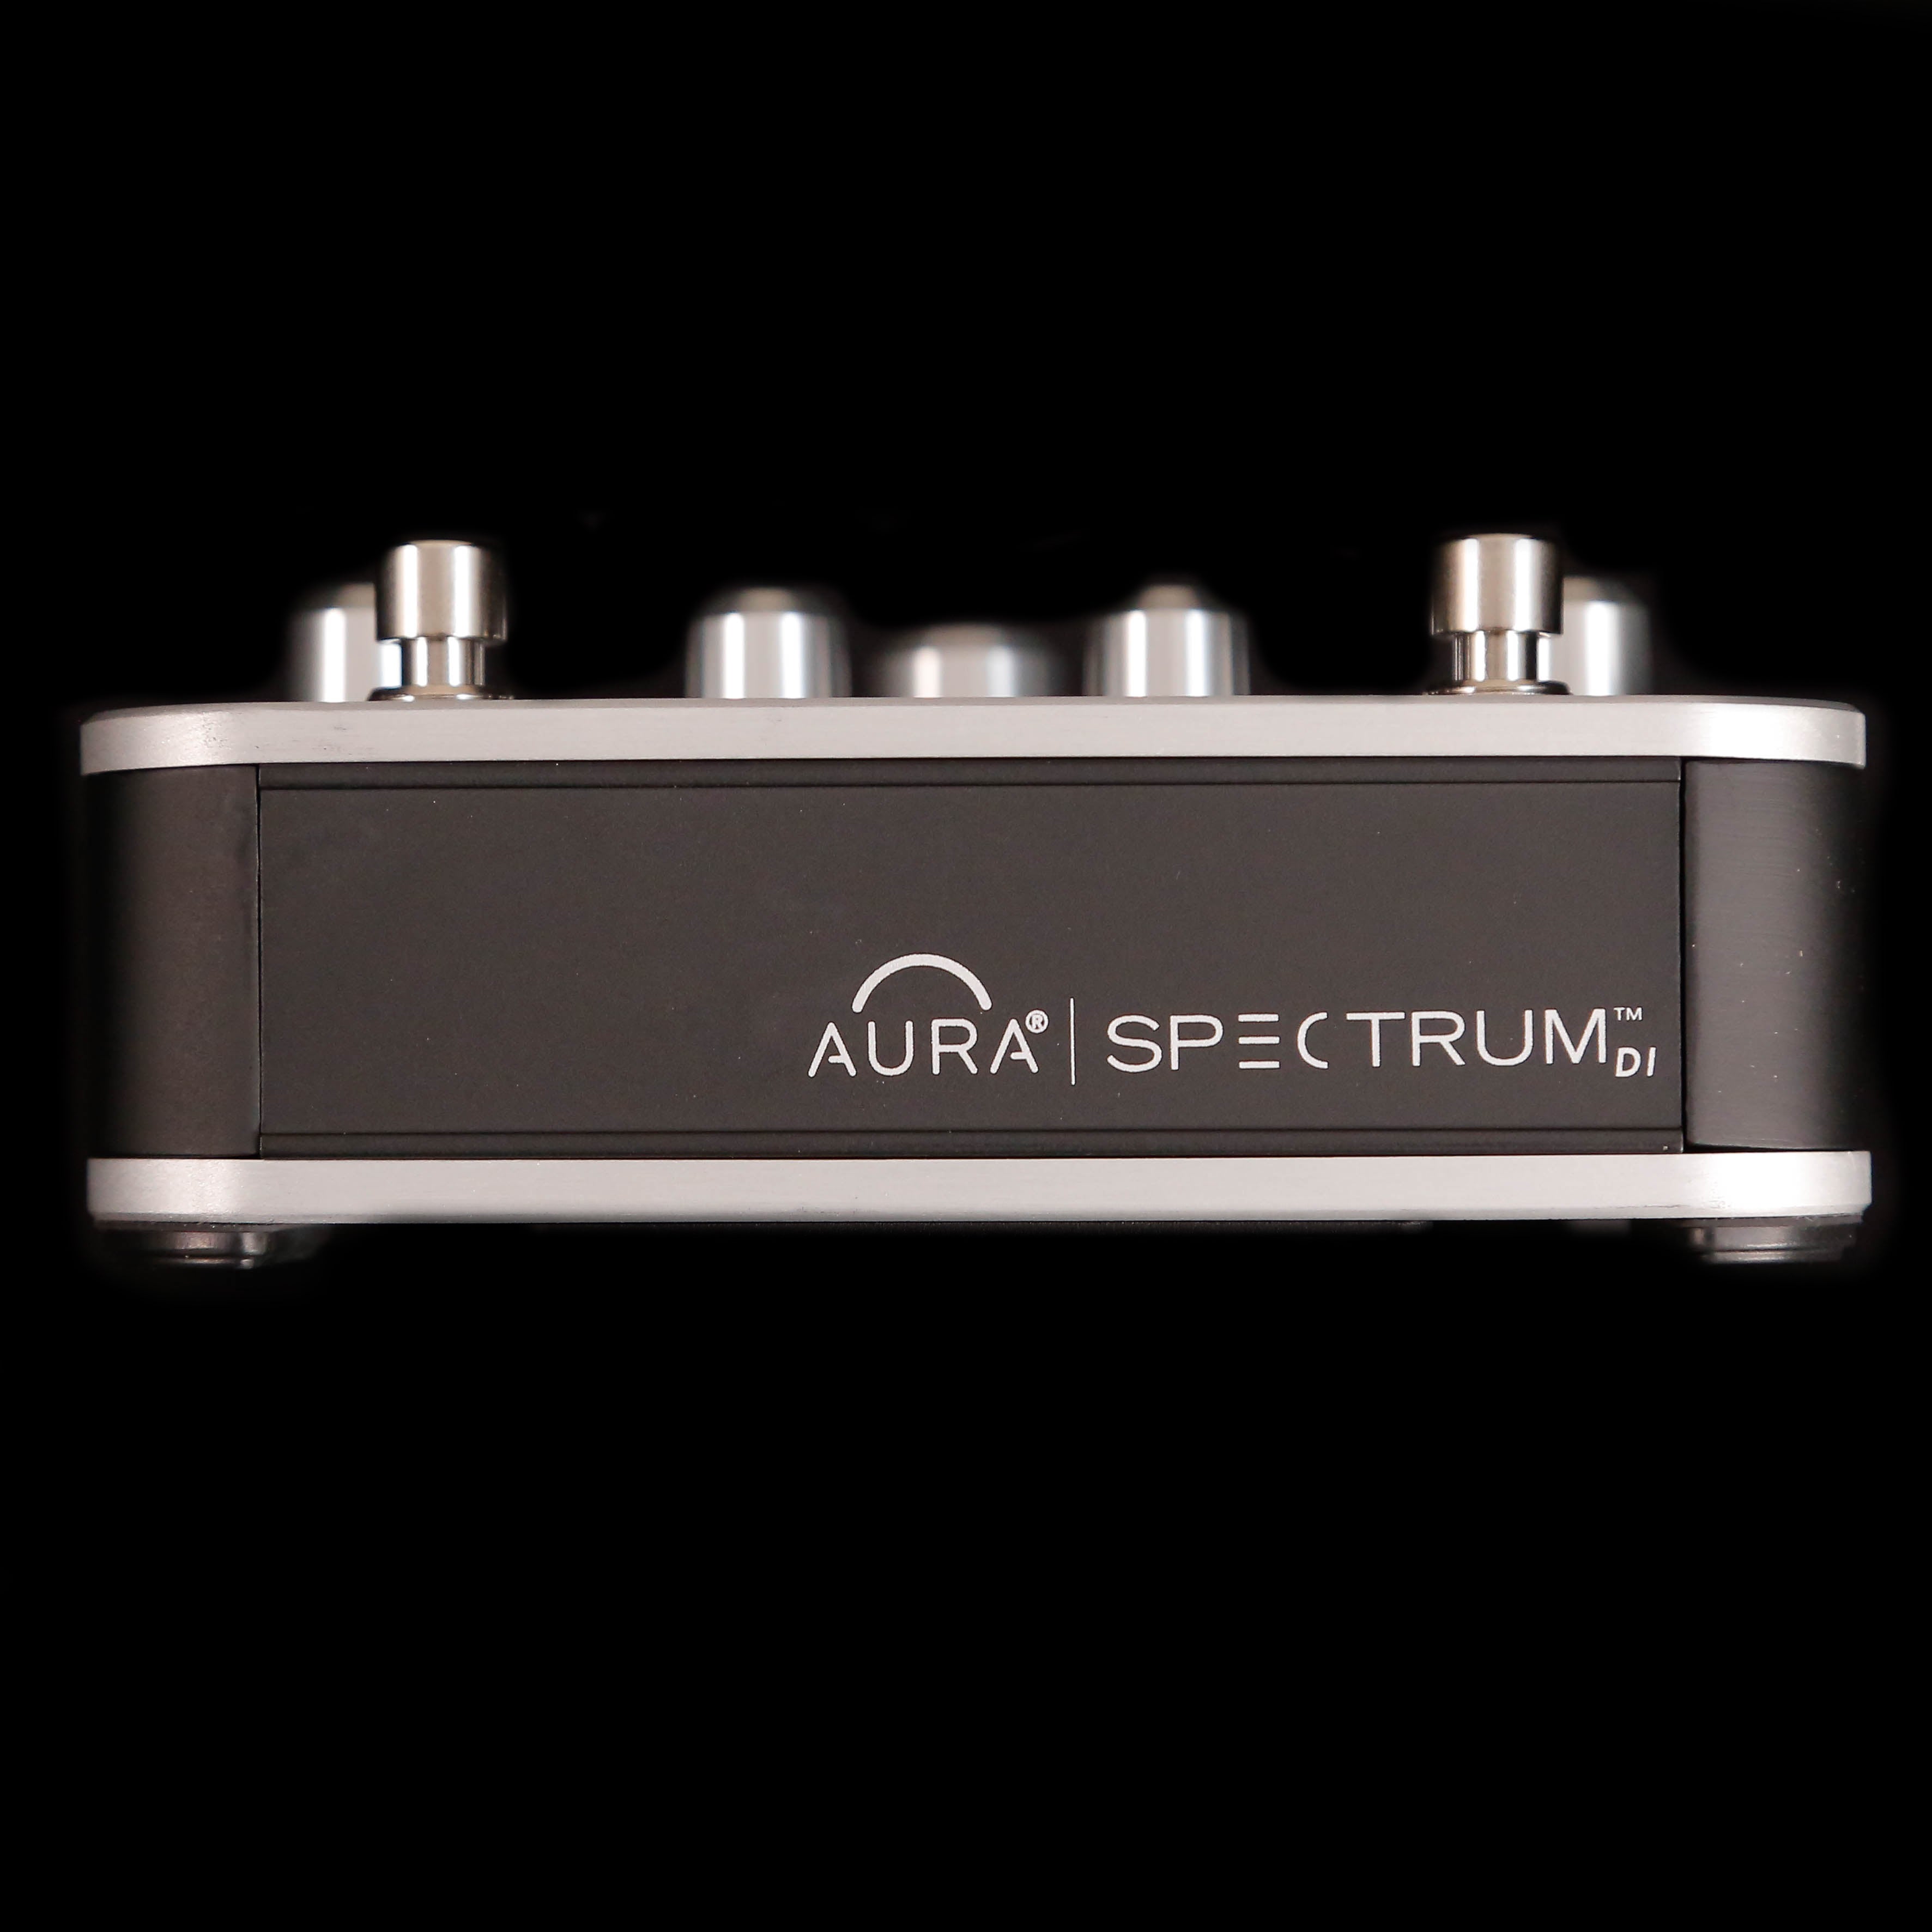 Fishman PRO-AUR-SPC Aura Spectrum DI